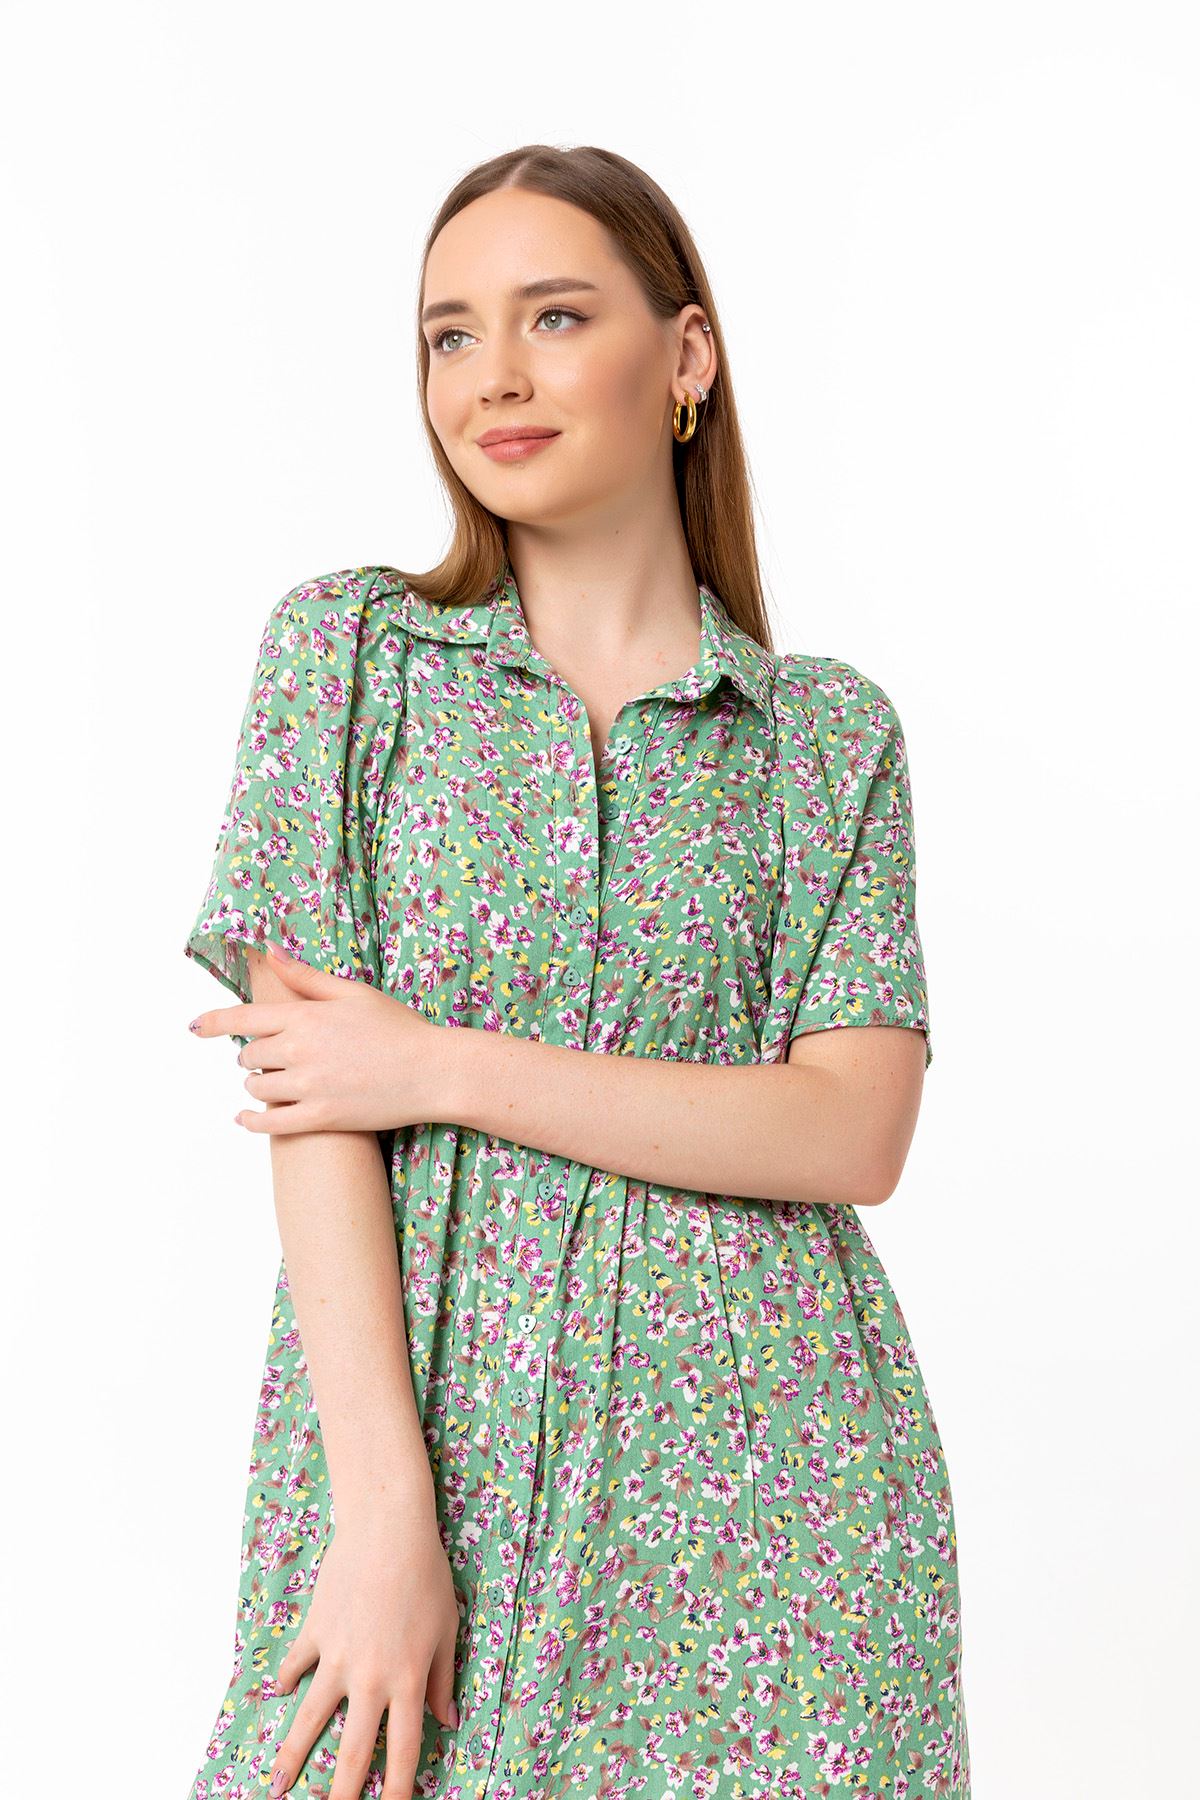 فستان نسائي قماش استيعاب ذراع قصير طوق القميص ميدي حجم كبير نمط زهرة - اخضر فاتح